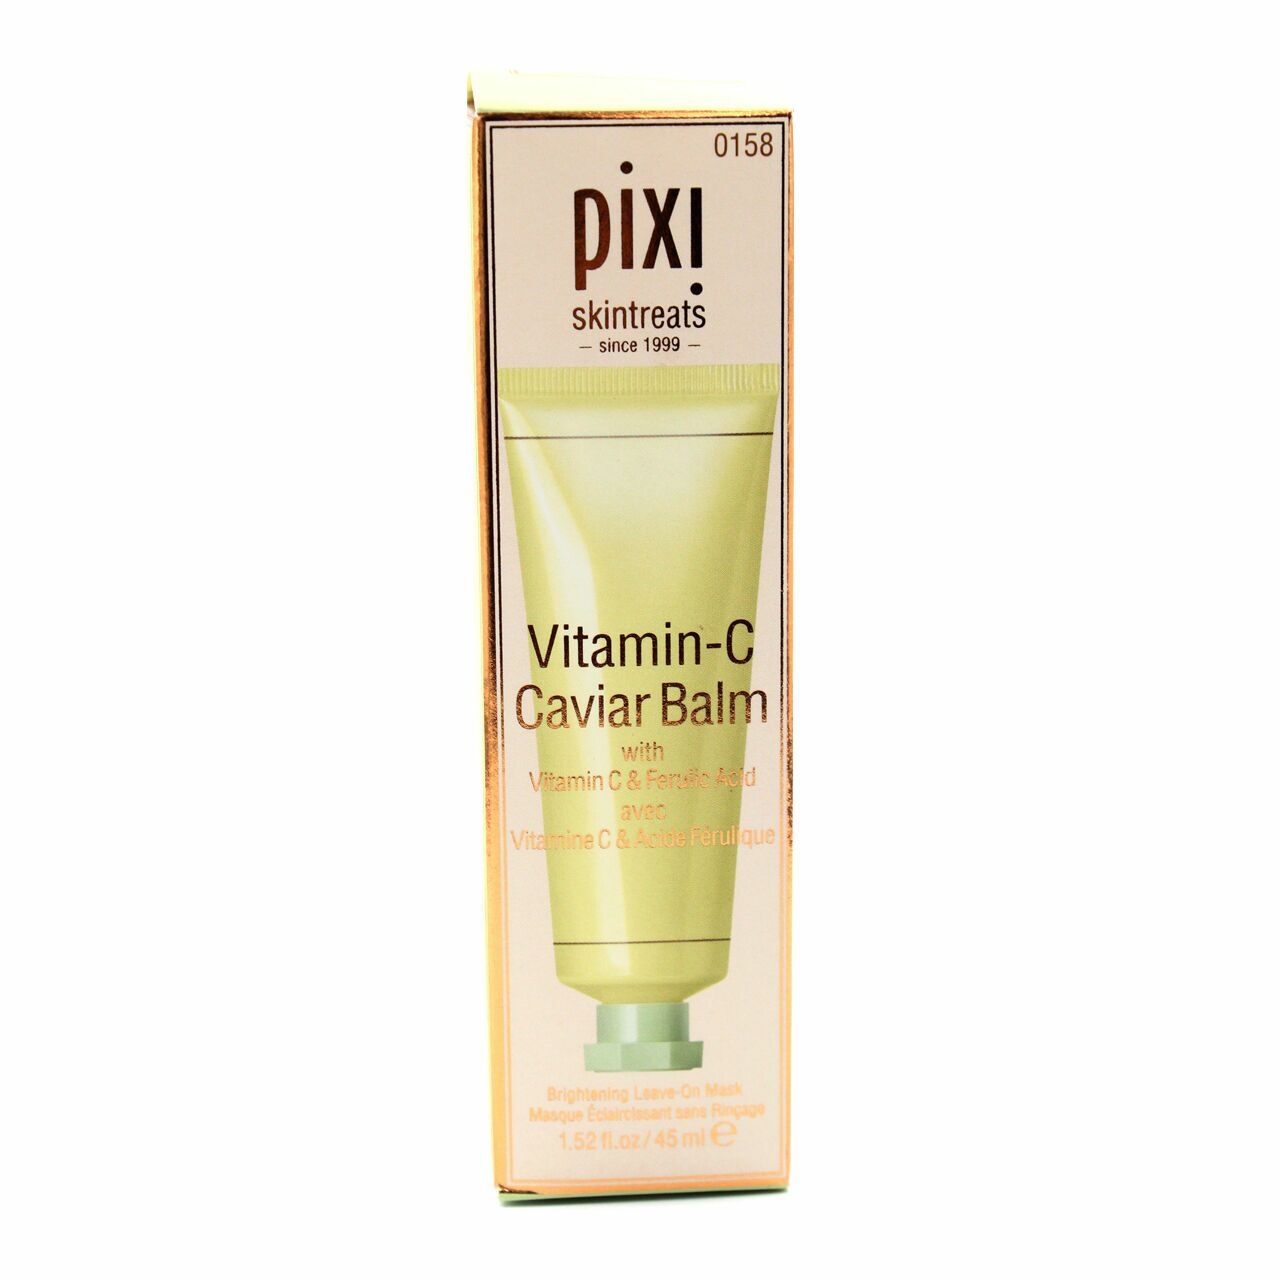 Pixi Vitamin-c Caviar Balm Skin Care